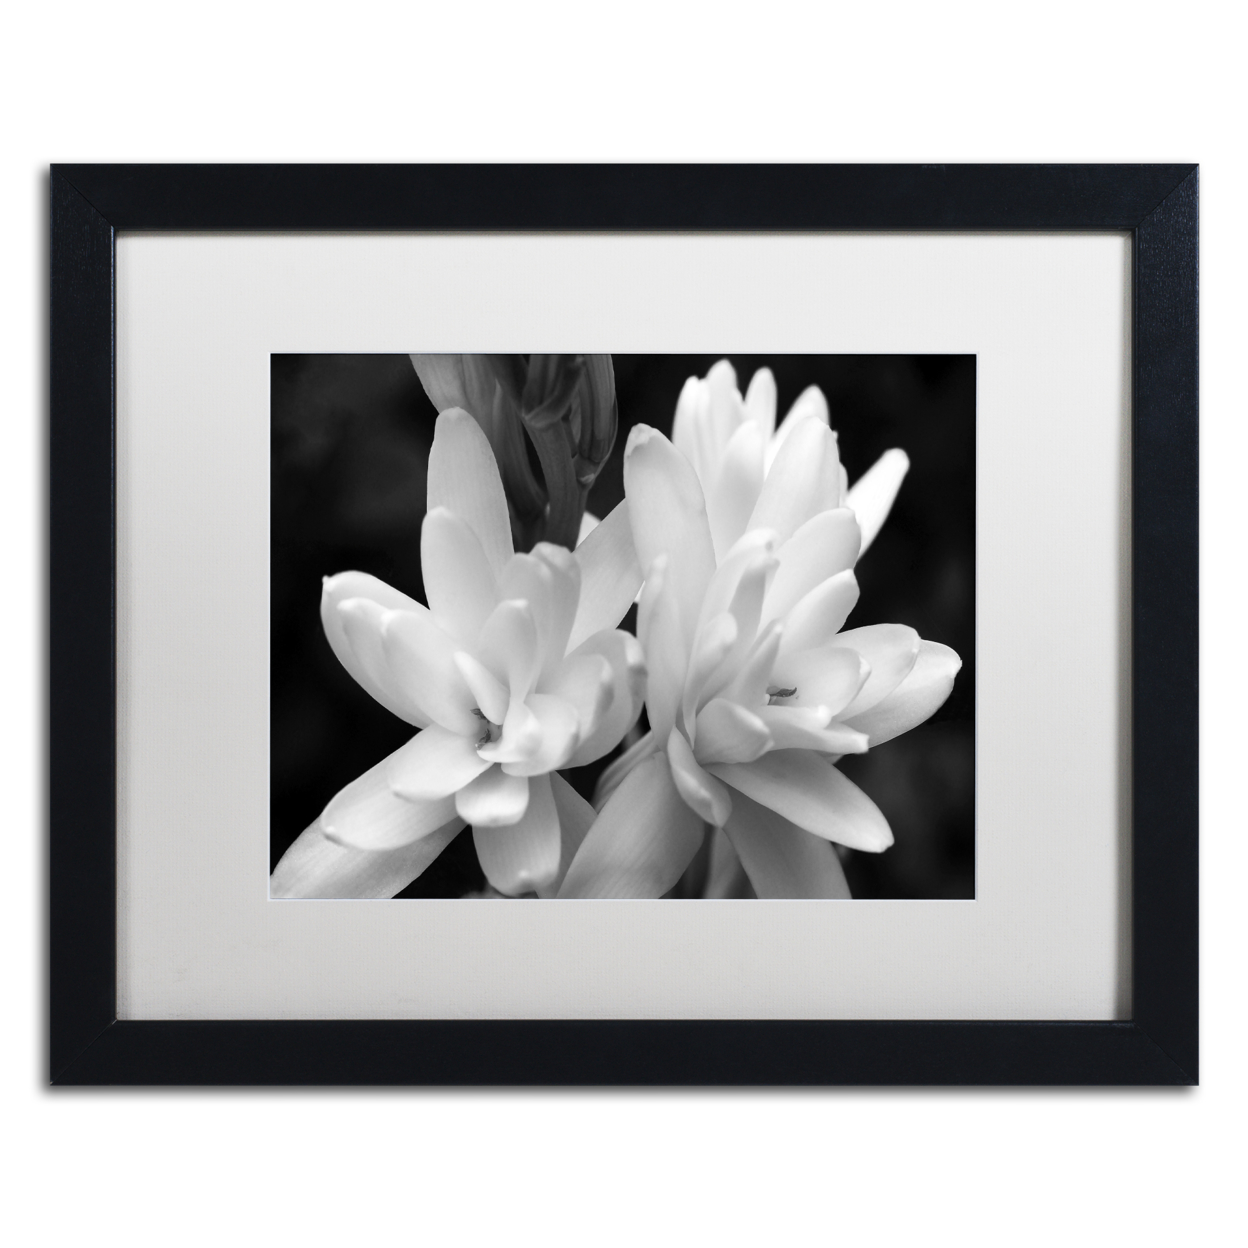 Kurt Shaffer 'Tuber Rose In Black And White' Black Wooden Framed Art 18 X 22 Inches